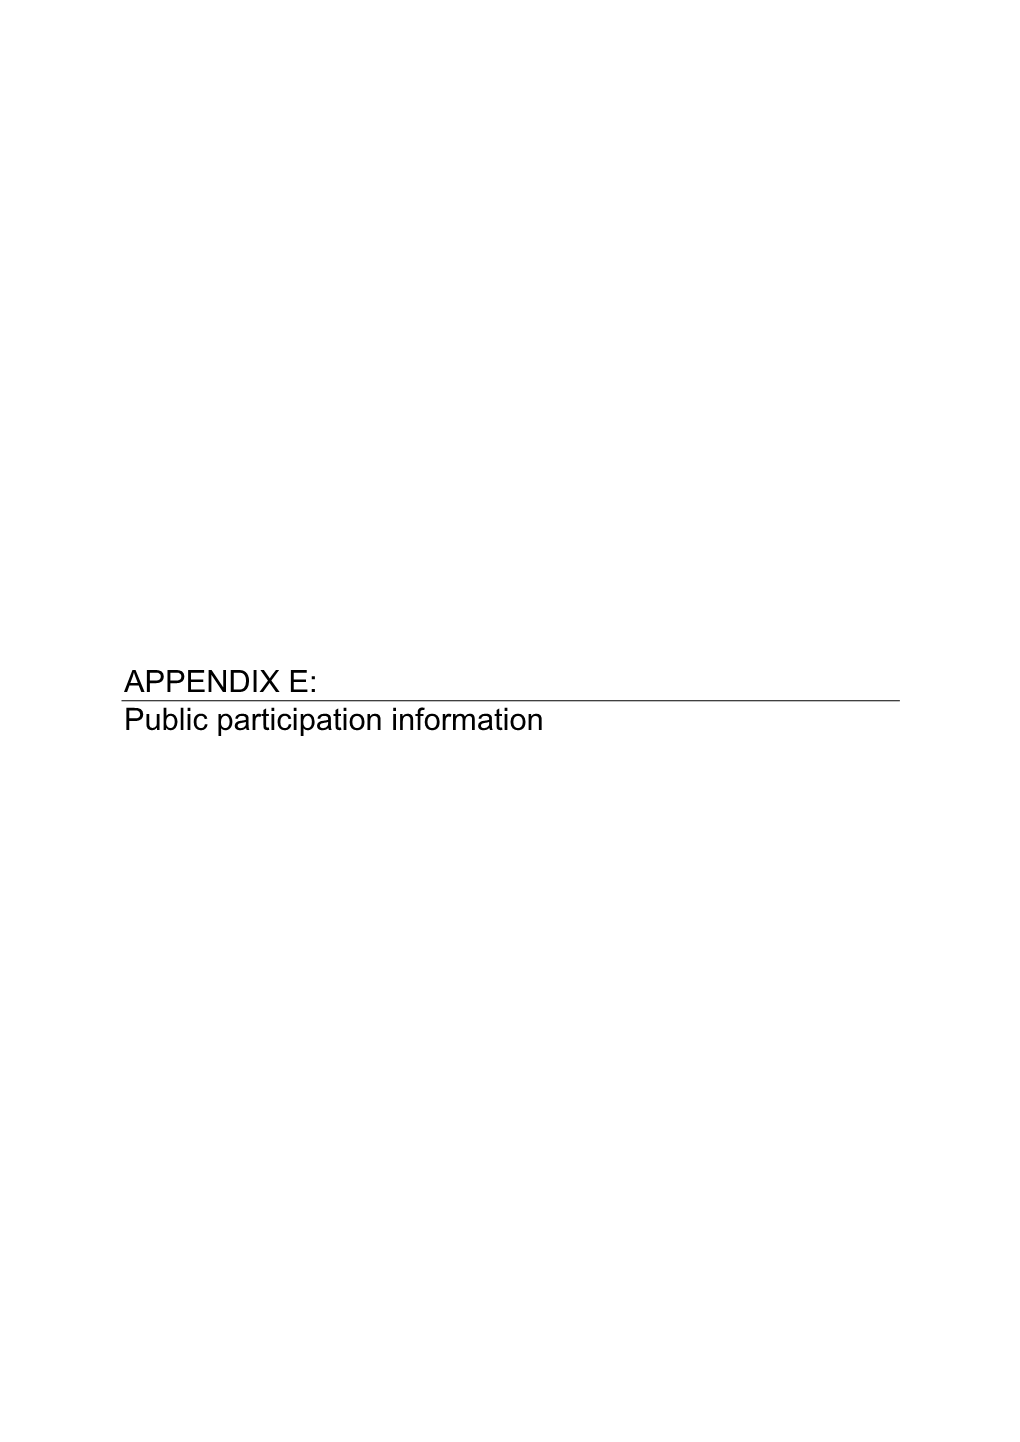 APPENDIX E: Public Participation Information